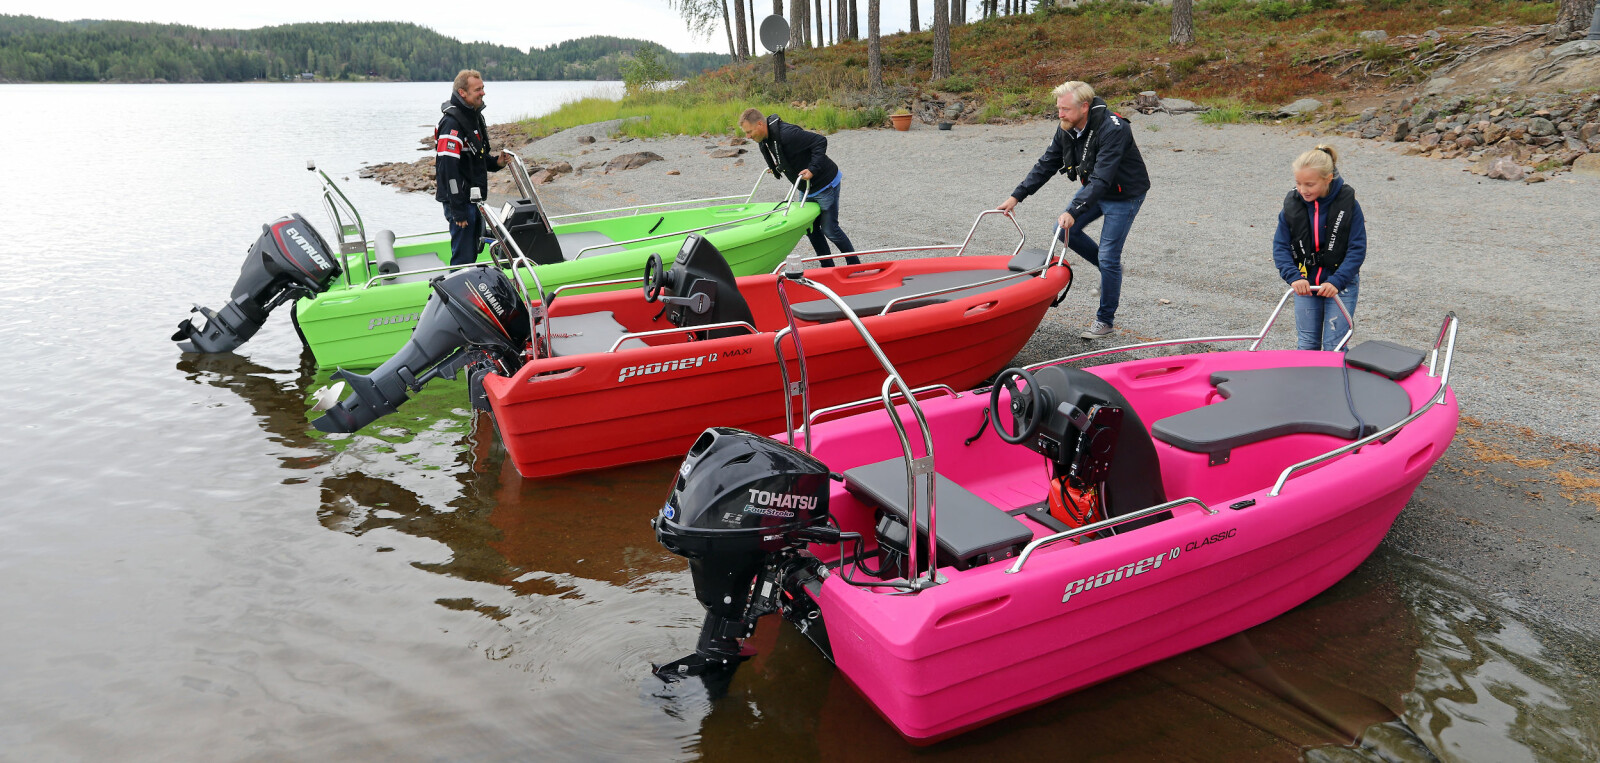 FARGERIKE: For svært mange er båtlivet blitt introdusert med Pioner, som er en norsk suksesshistorie. Og det er ingen fare for at Norge gråner med disse tre Pioner-utgavene på stranda. Og ja, du kan få dem i mindre oppsiktsvekkende versjoner også.